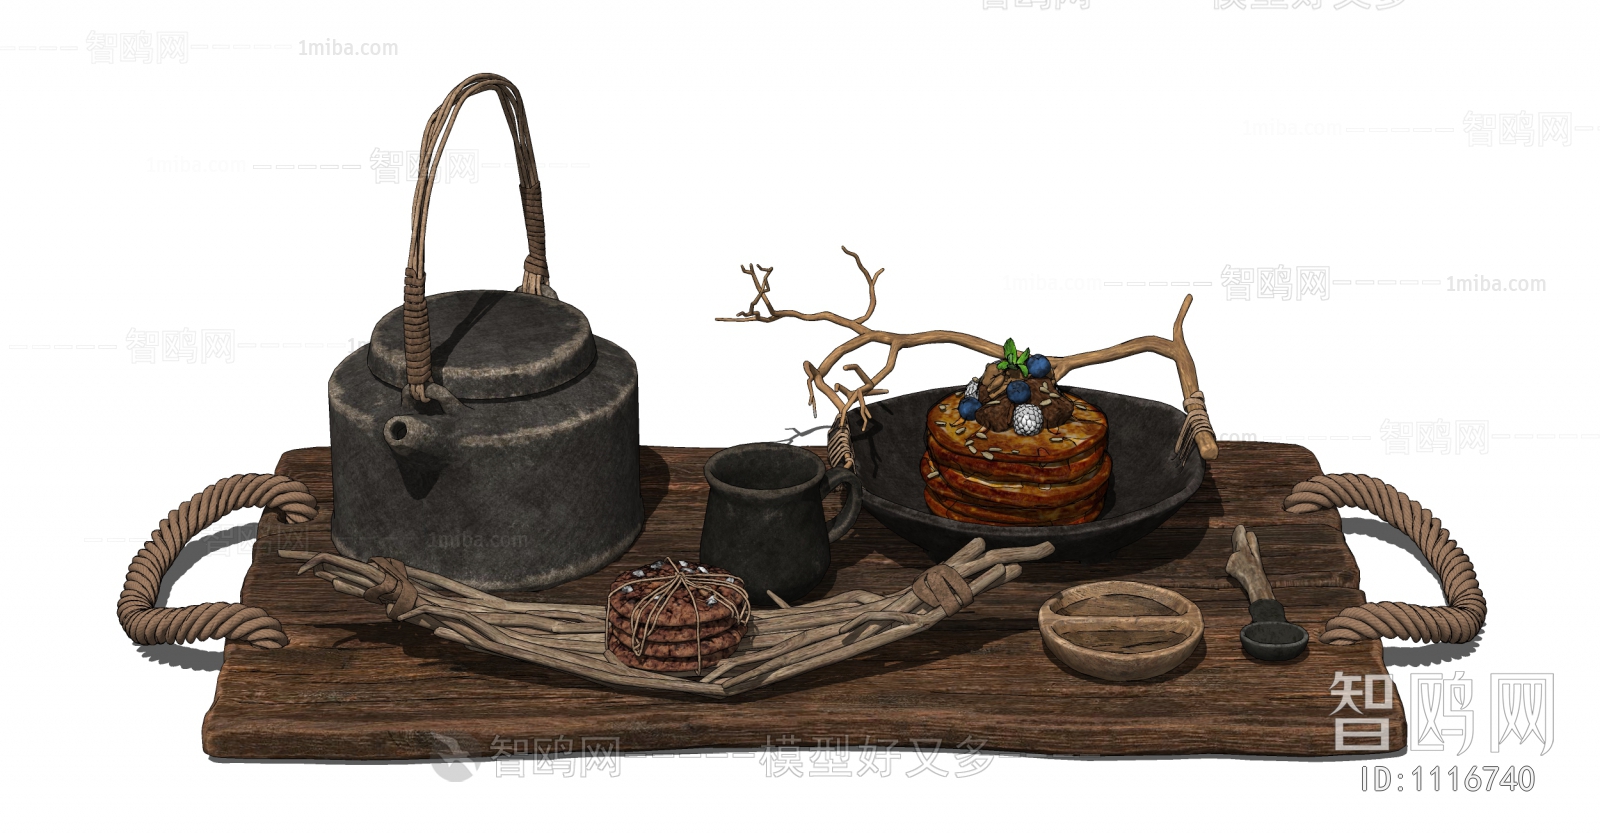 Wabi-sabi Style Tea Set